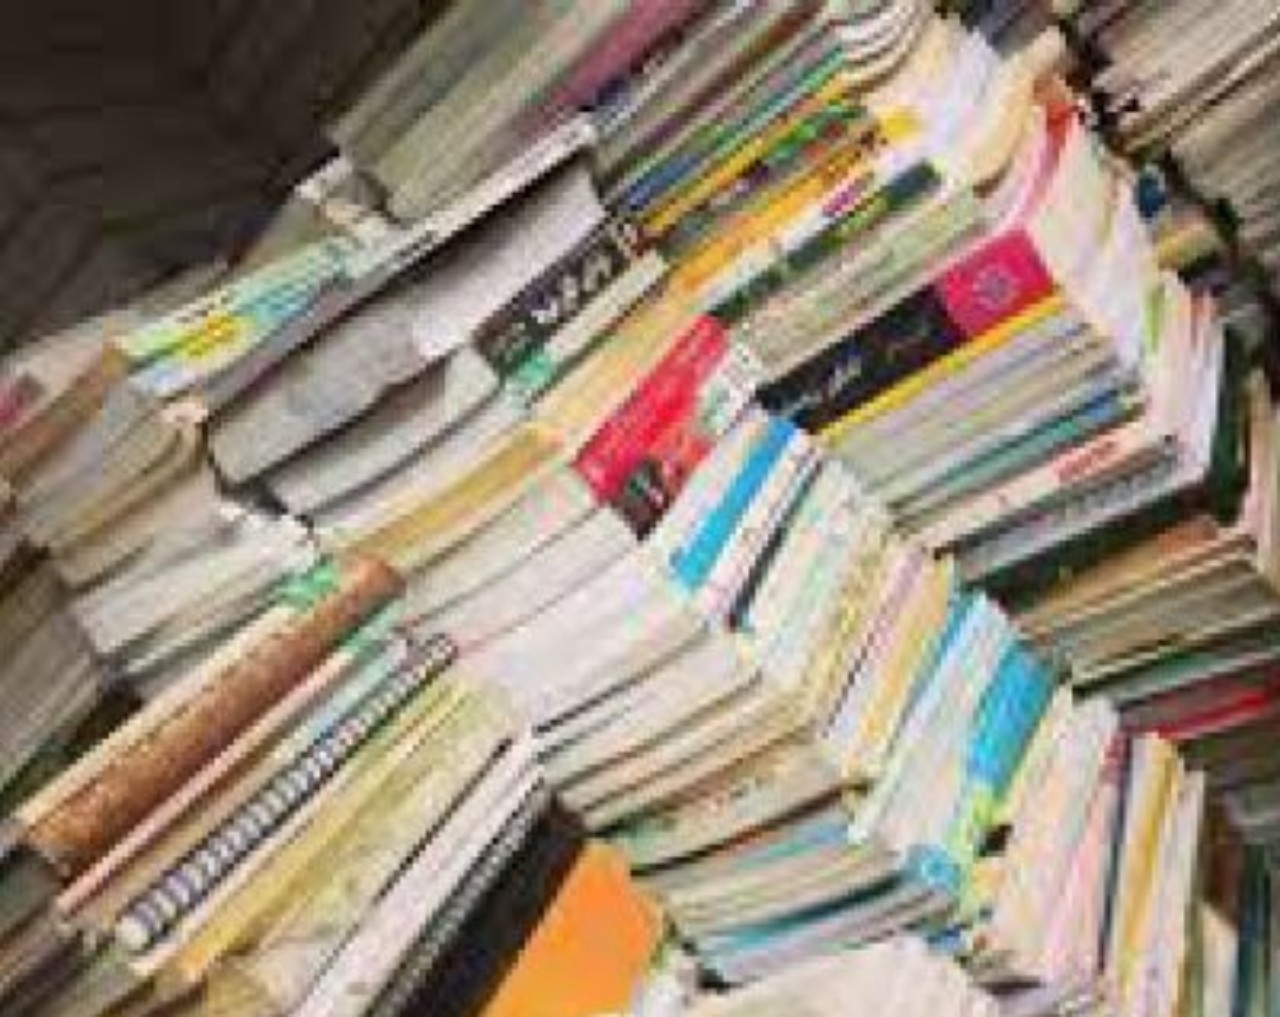 خریدار ضایعات کاغذ کارتن دفتر کتاب روزنامه باطله در تهران